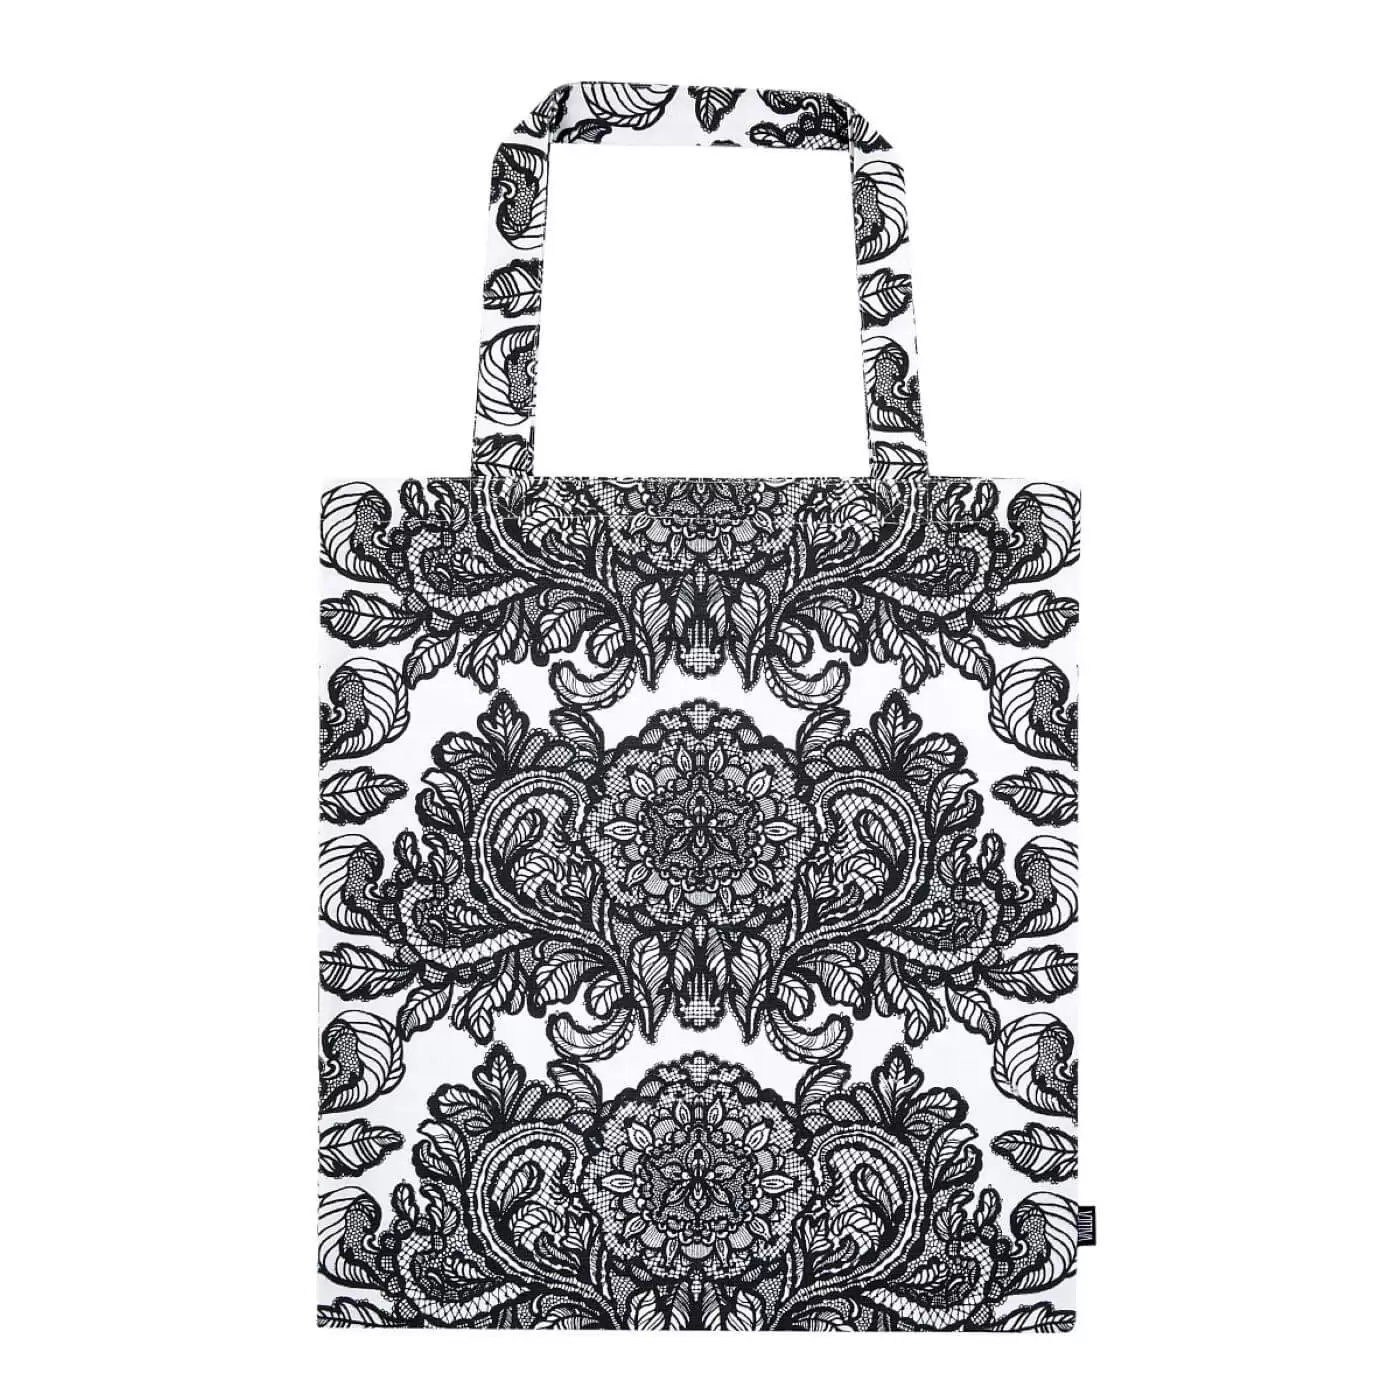 Elegancka torba bawełniana ALEKSANTERI. Czarny graficzny wzór stylizowanych kwiatów i liści konwalii na białym tle. Torba bawełniana na zakupy widoczna w całości. Skandynawski design